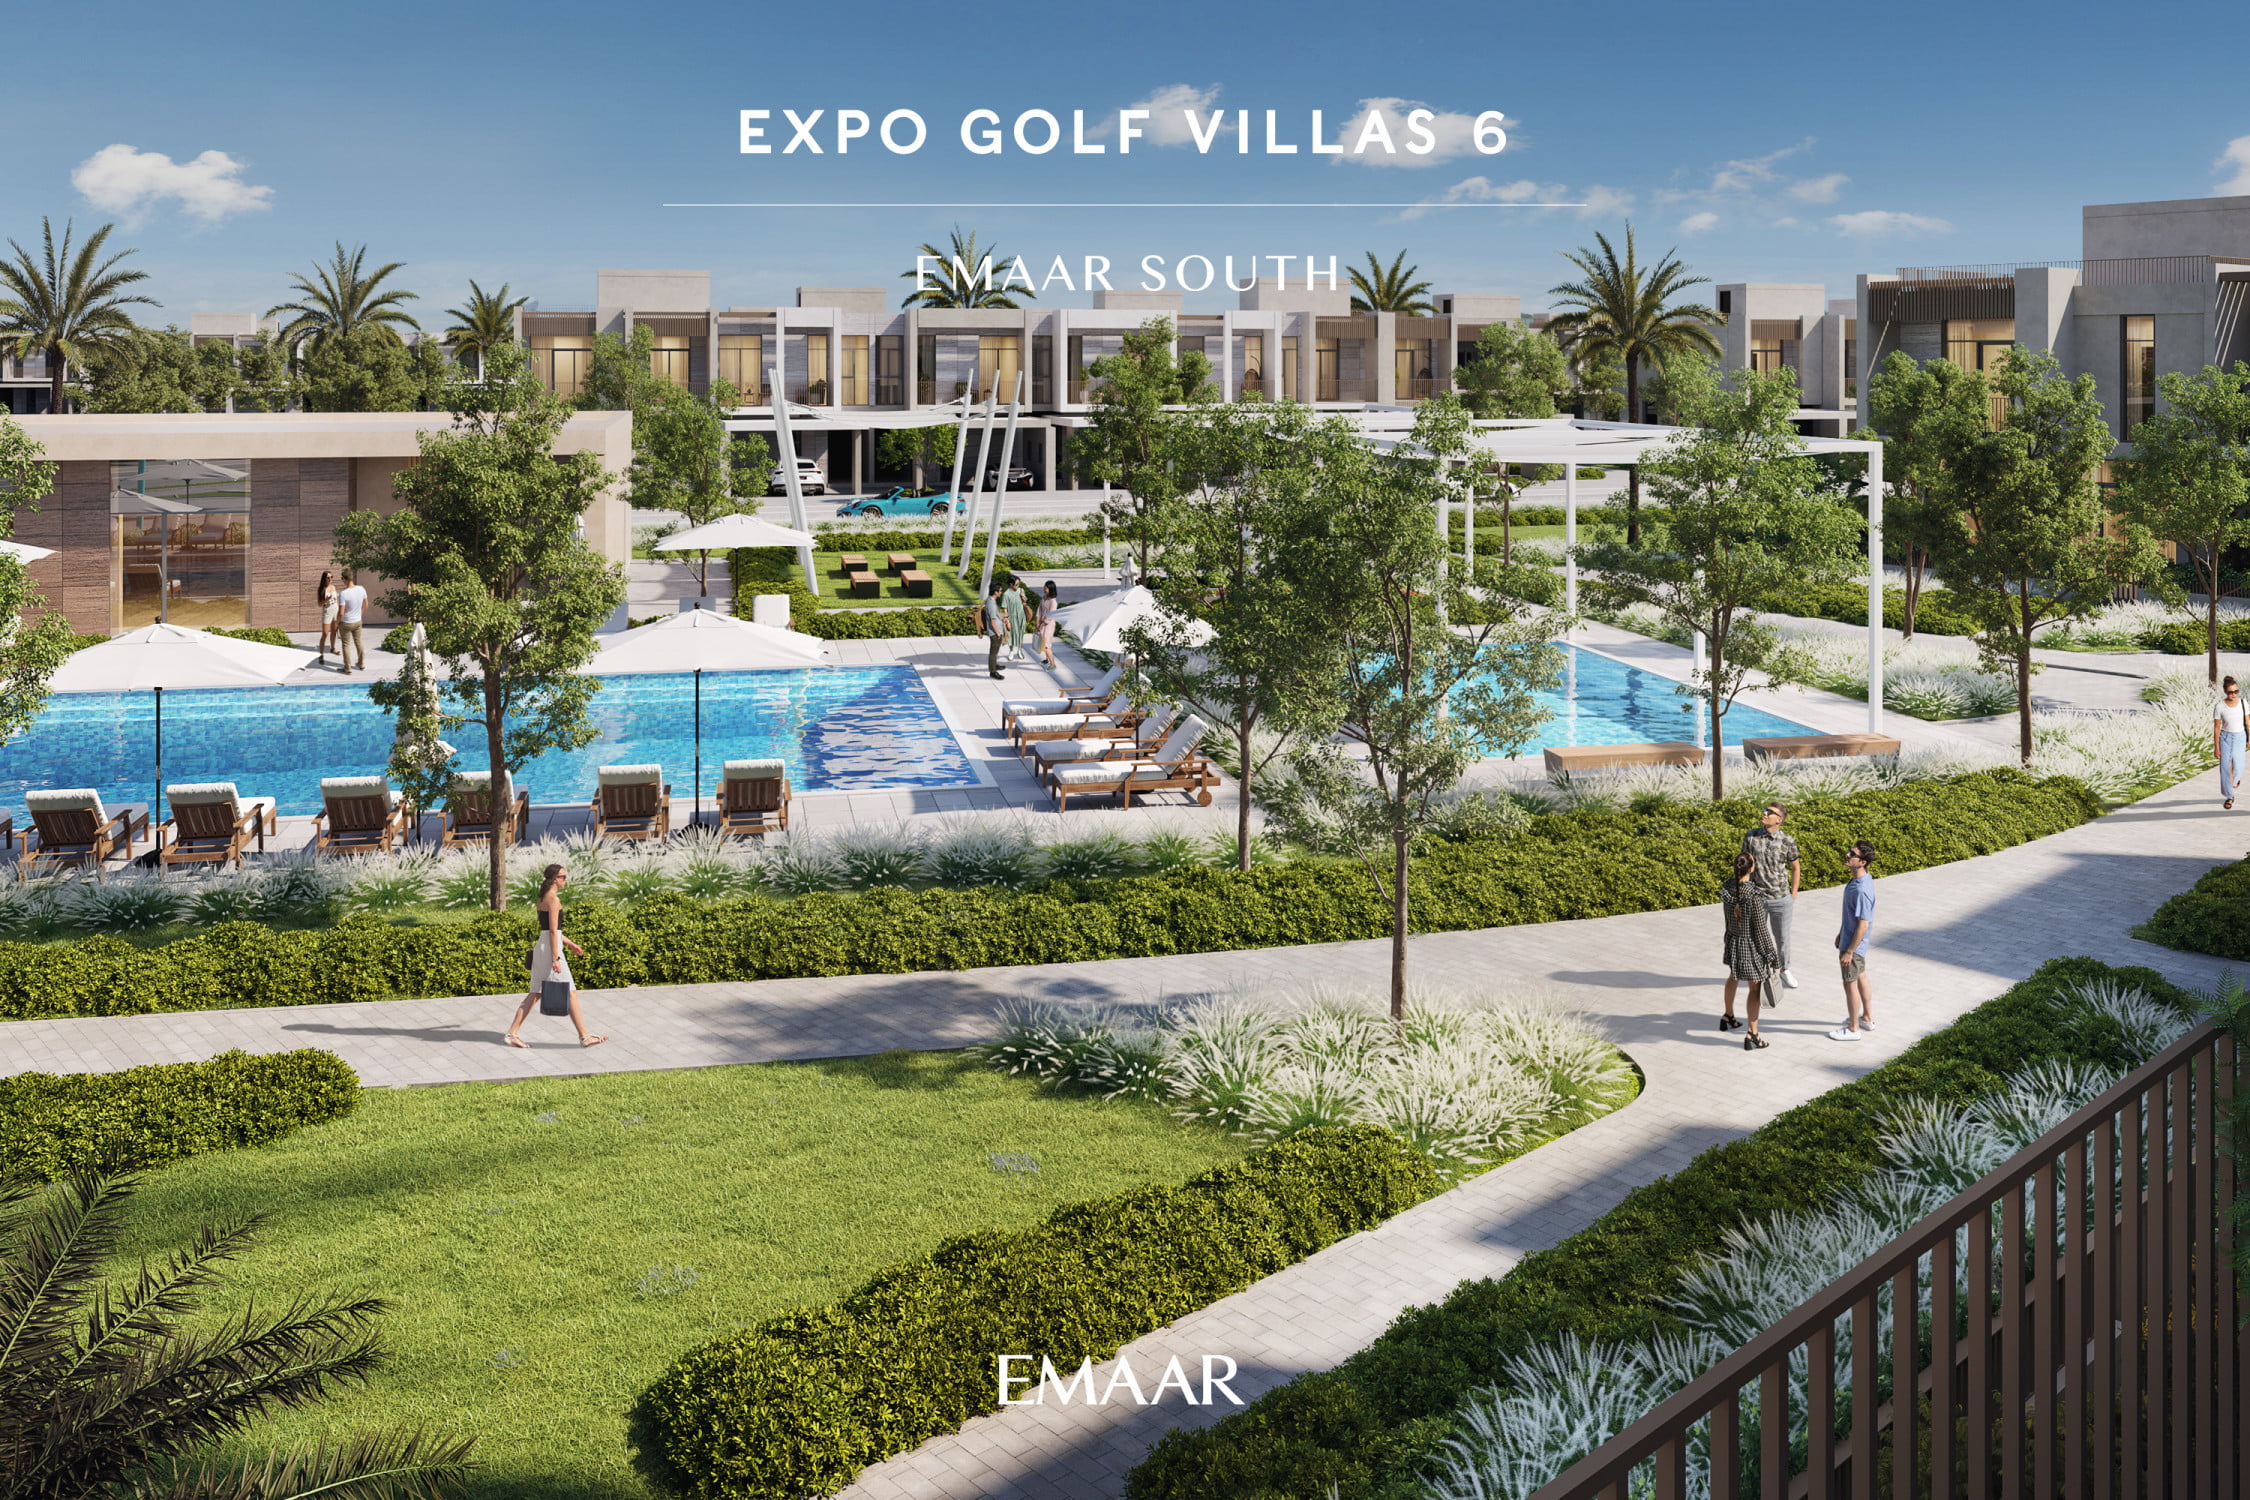 EXPO GOLF VILLAS - Immobilier Dubai